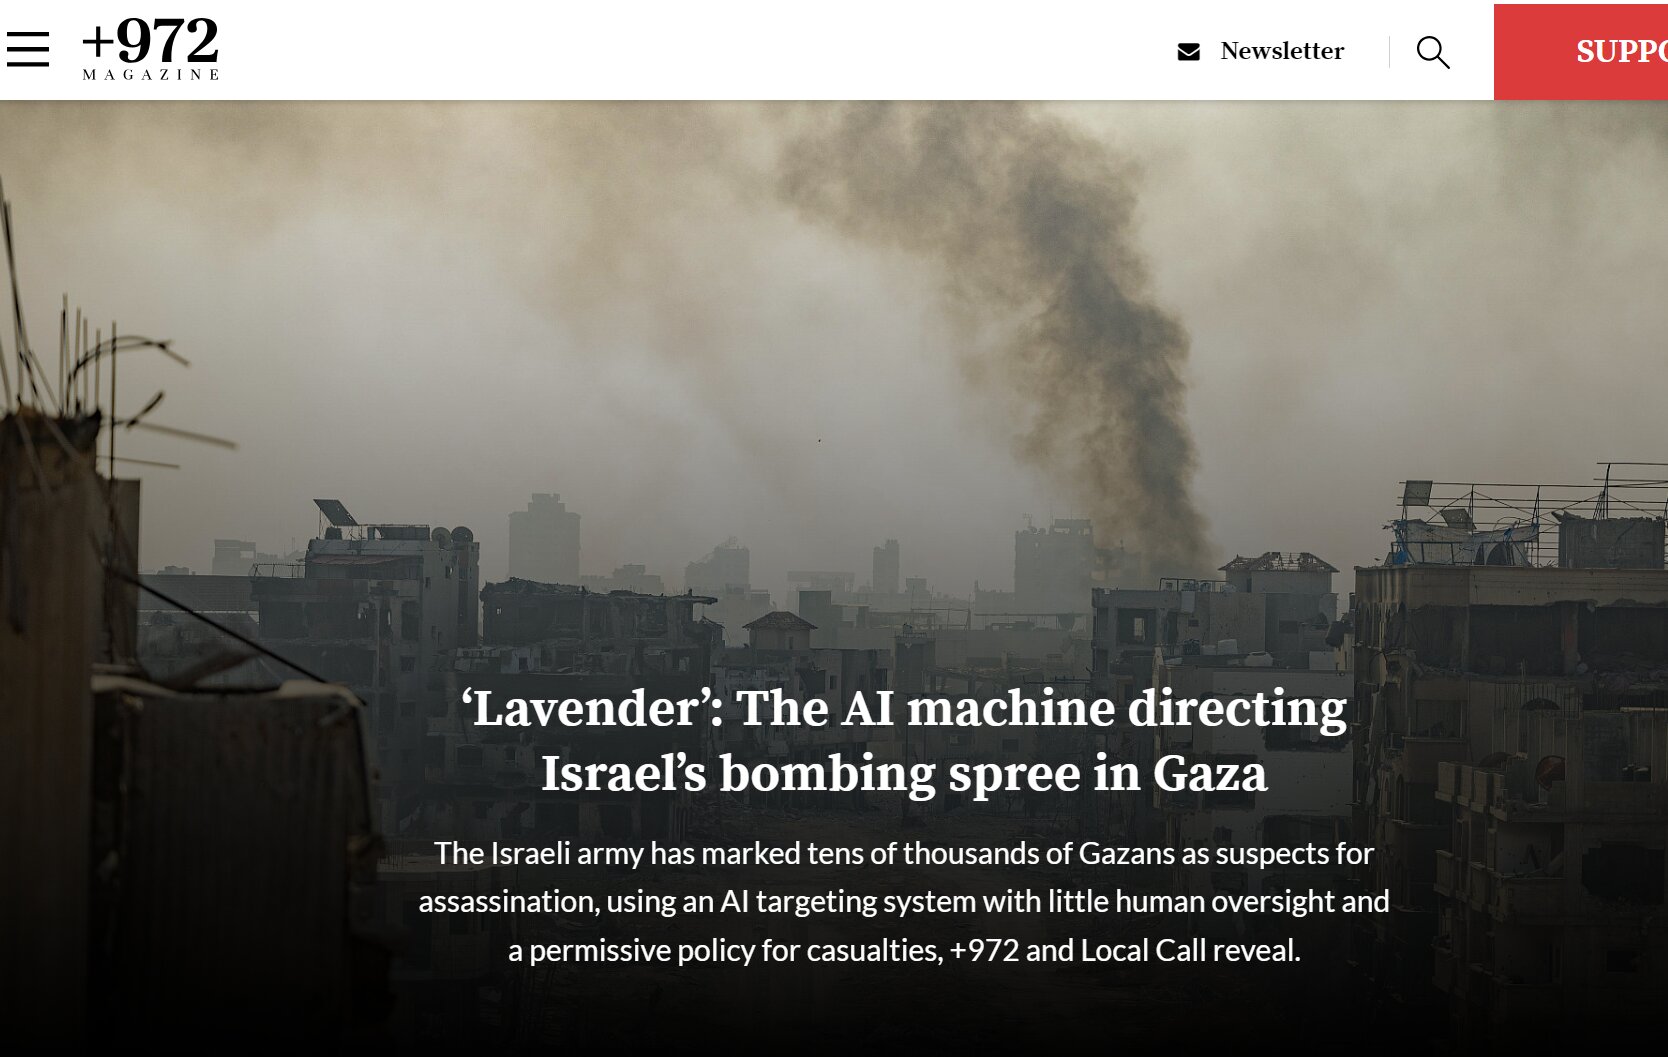 イスラエルの独立系メディア＋９７２マガジンのサイトで公開された「ラベンダー（Lavender）：ガザでイスラエル軍に爆撃を指示する AI（人工頭脳）マシン」の調査報道